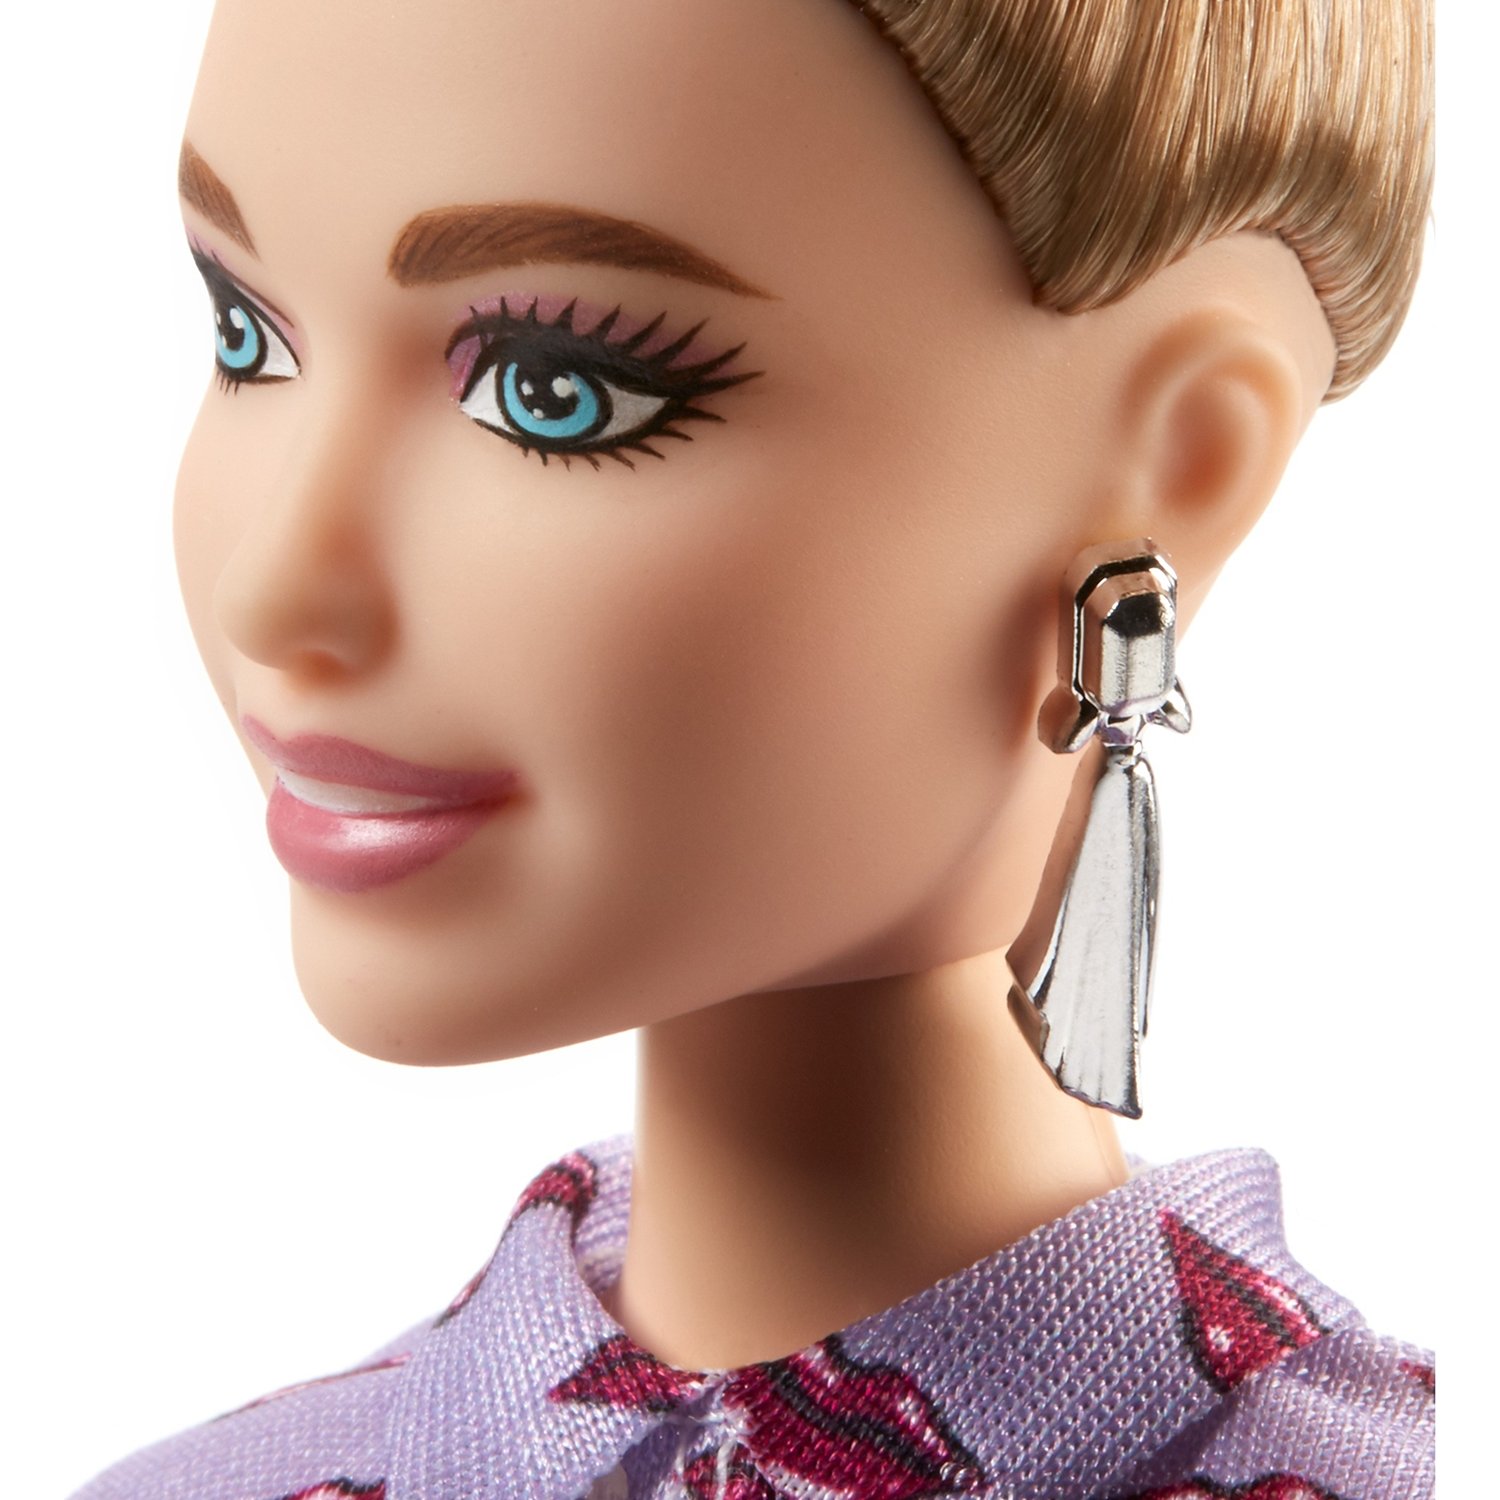 Кукла Barbie FJF40 Игра с модой